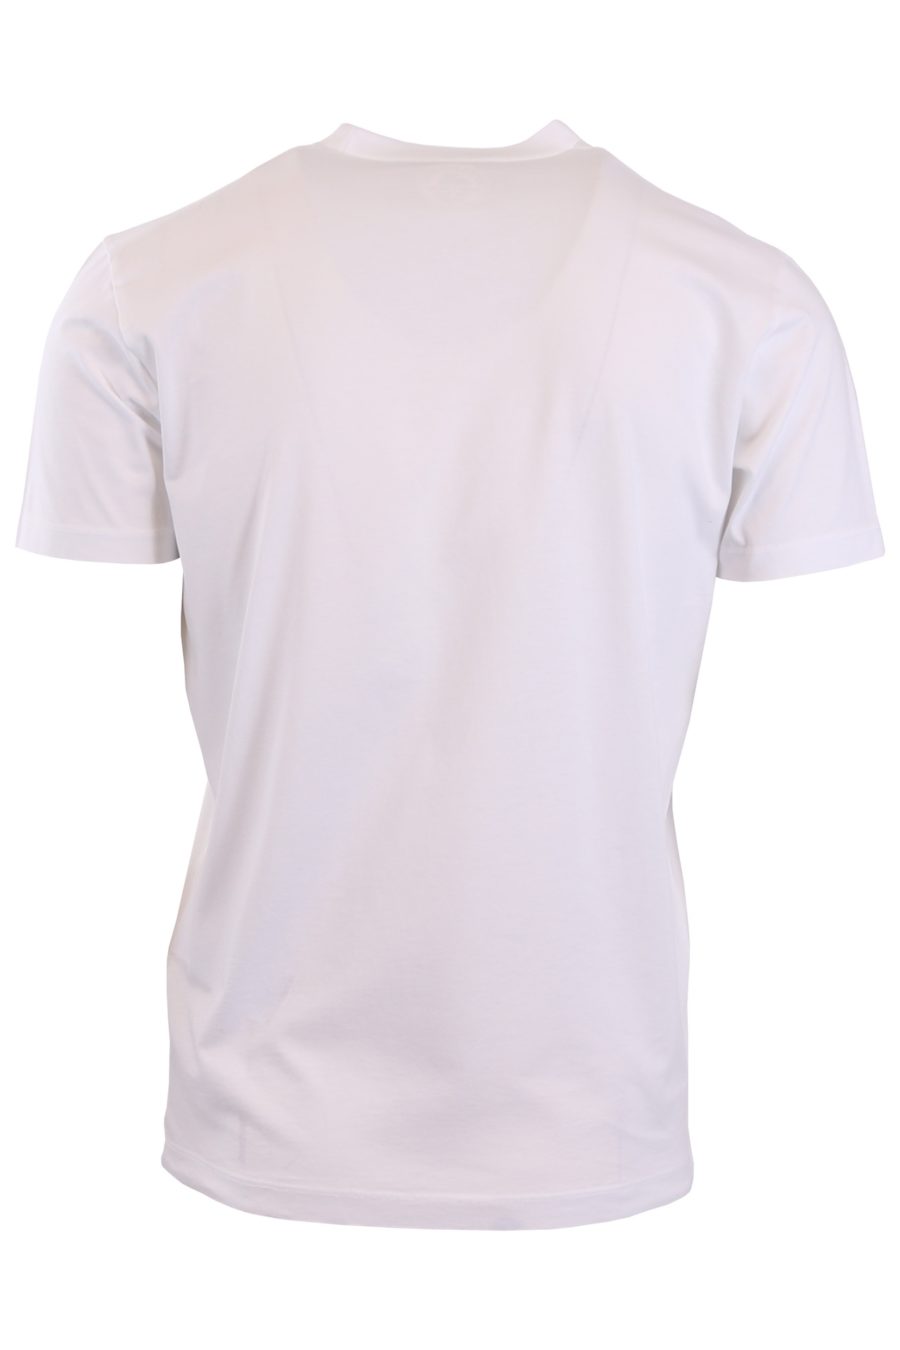 Camiseta Dsquared2 blanca con "Icon" reflectivo - dd14afe55cec14fe84e987d14aa486316f6046d3